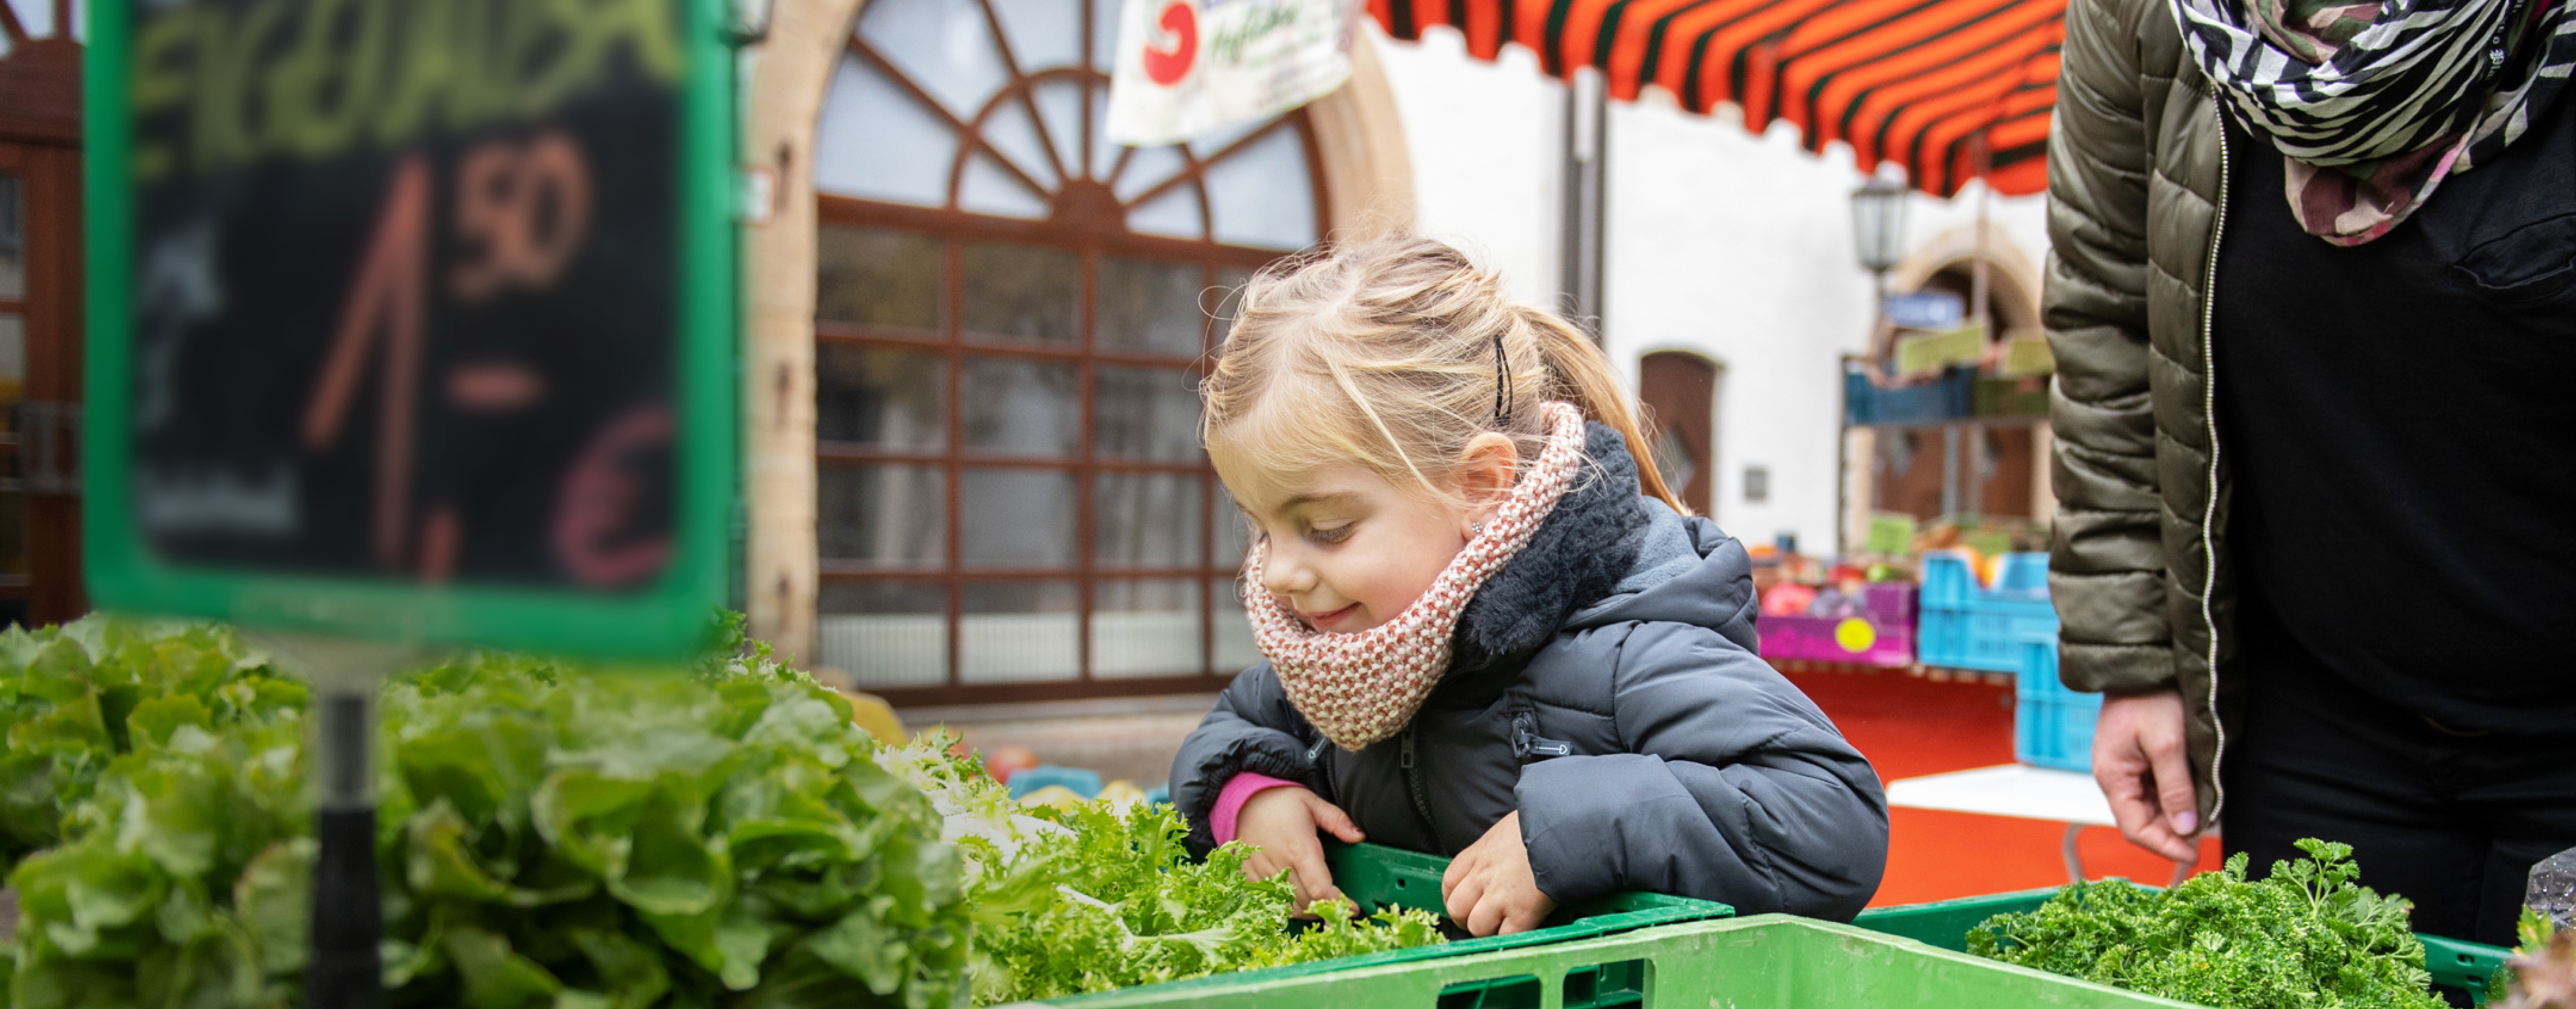 Kind schaut in Kiste mit Salat an einem Marktstand